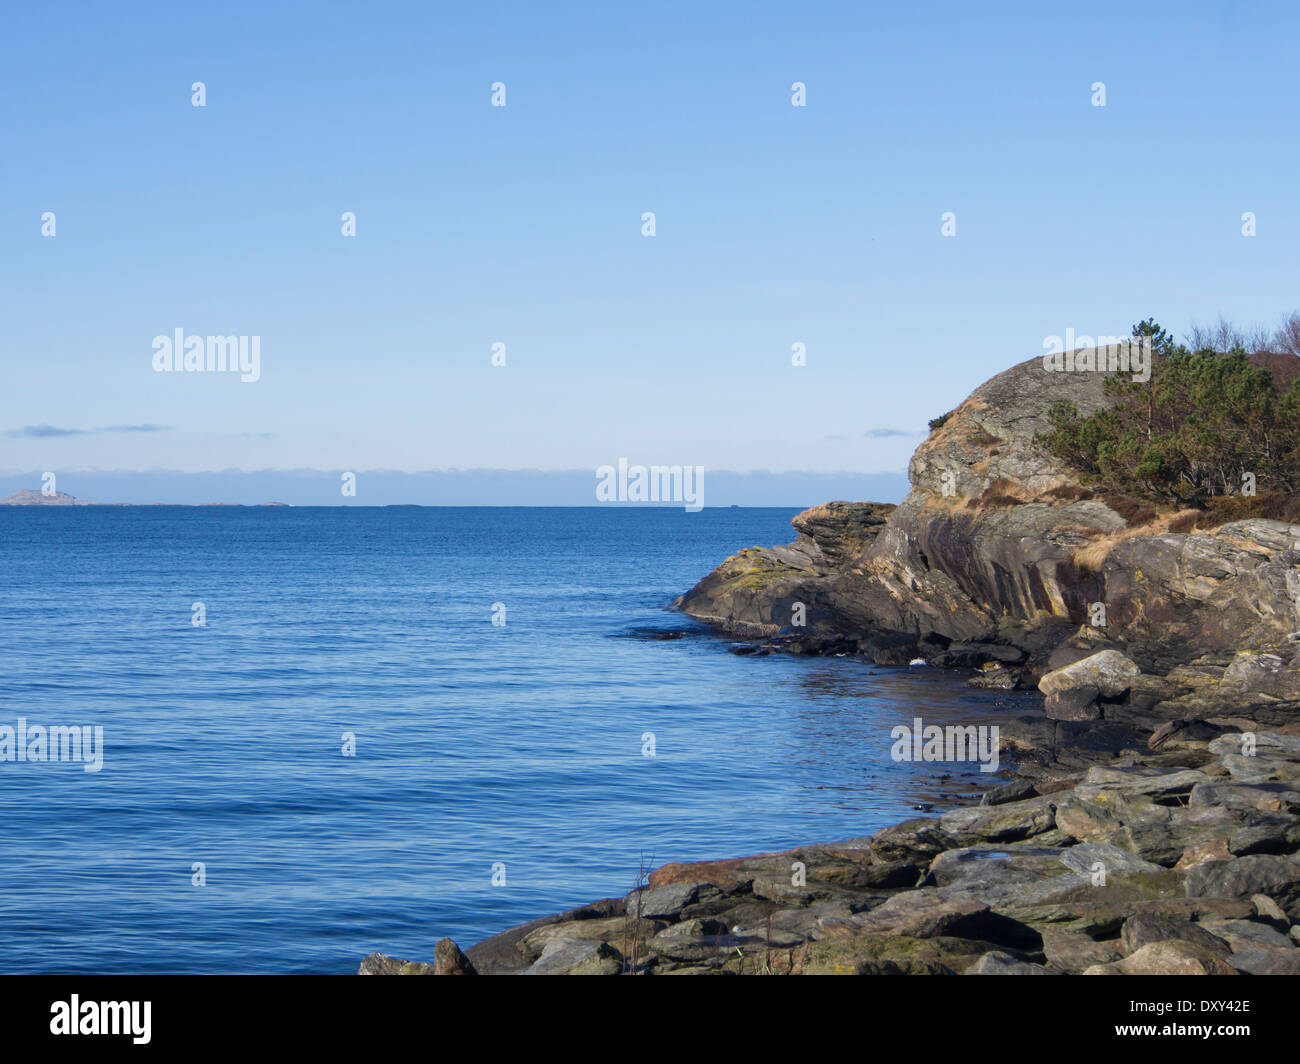 Ciel bleu, mer et rochers, mer calme avec de petites vagues sur la côte de la mer du Nord de la Norvège Banque D'Images